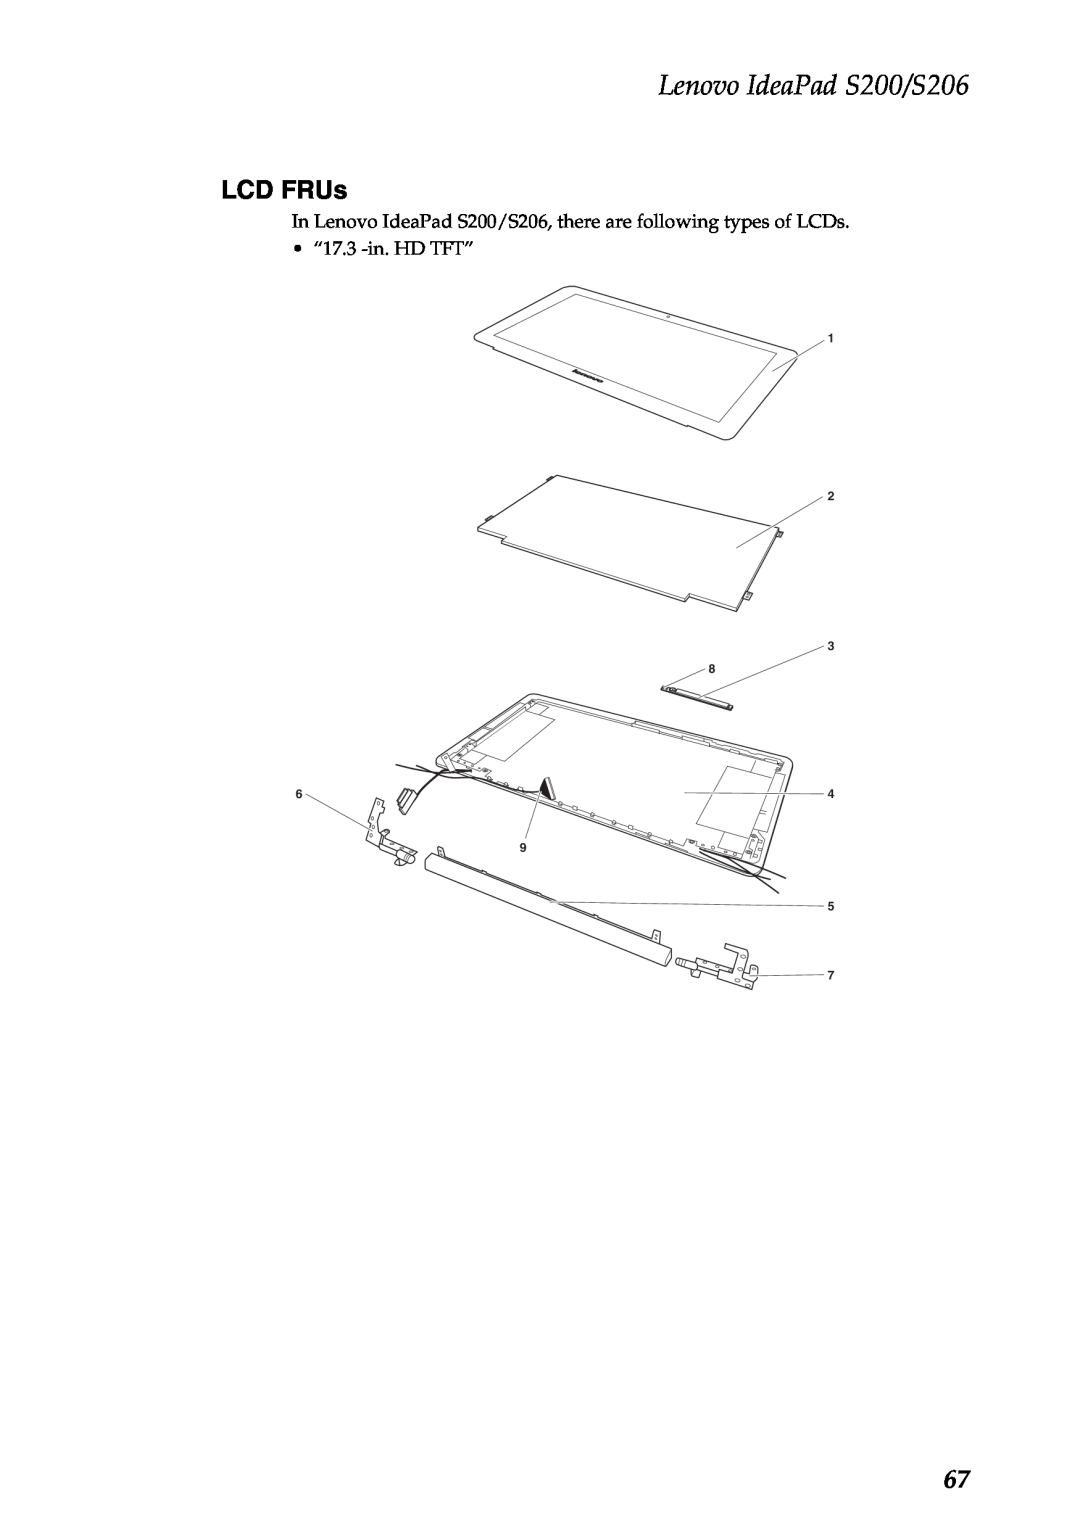 Lenovo manual LCD FRUs, Lenovo IdeaPad S200/S206, “17.3 -in.HD TFT” 